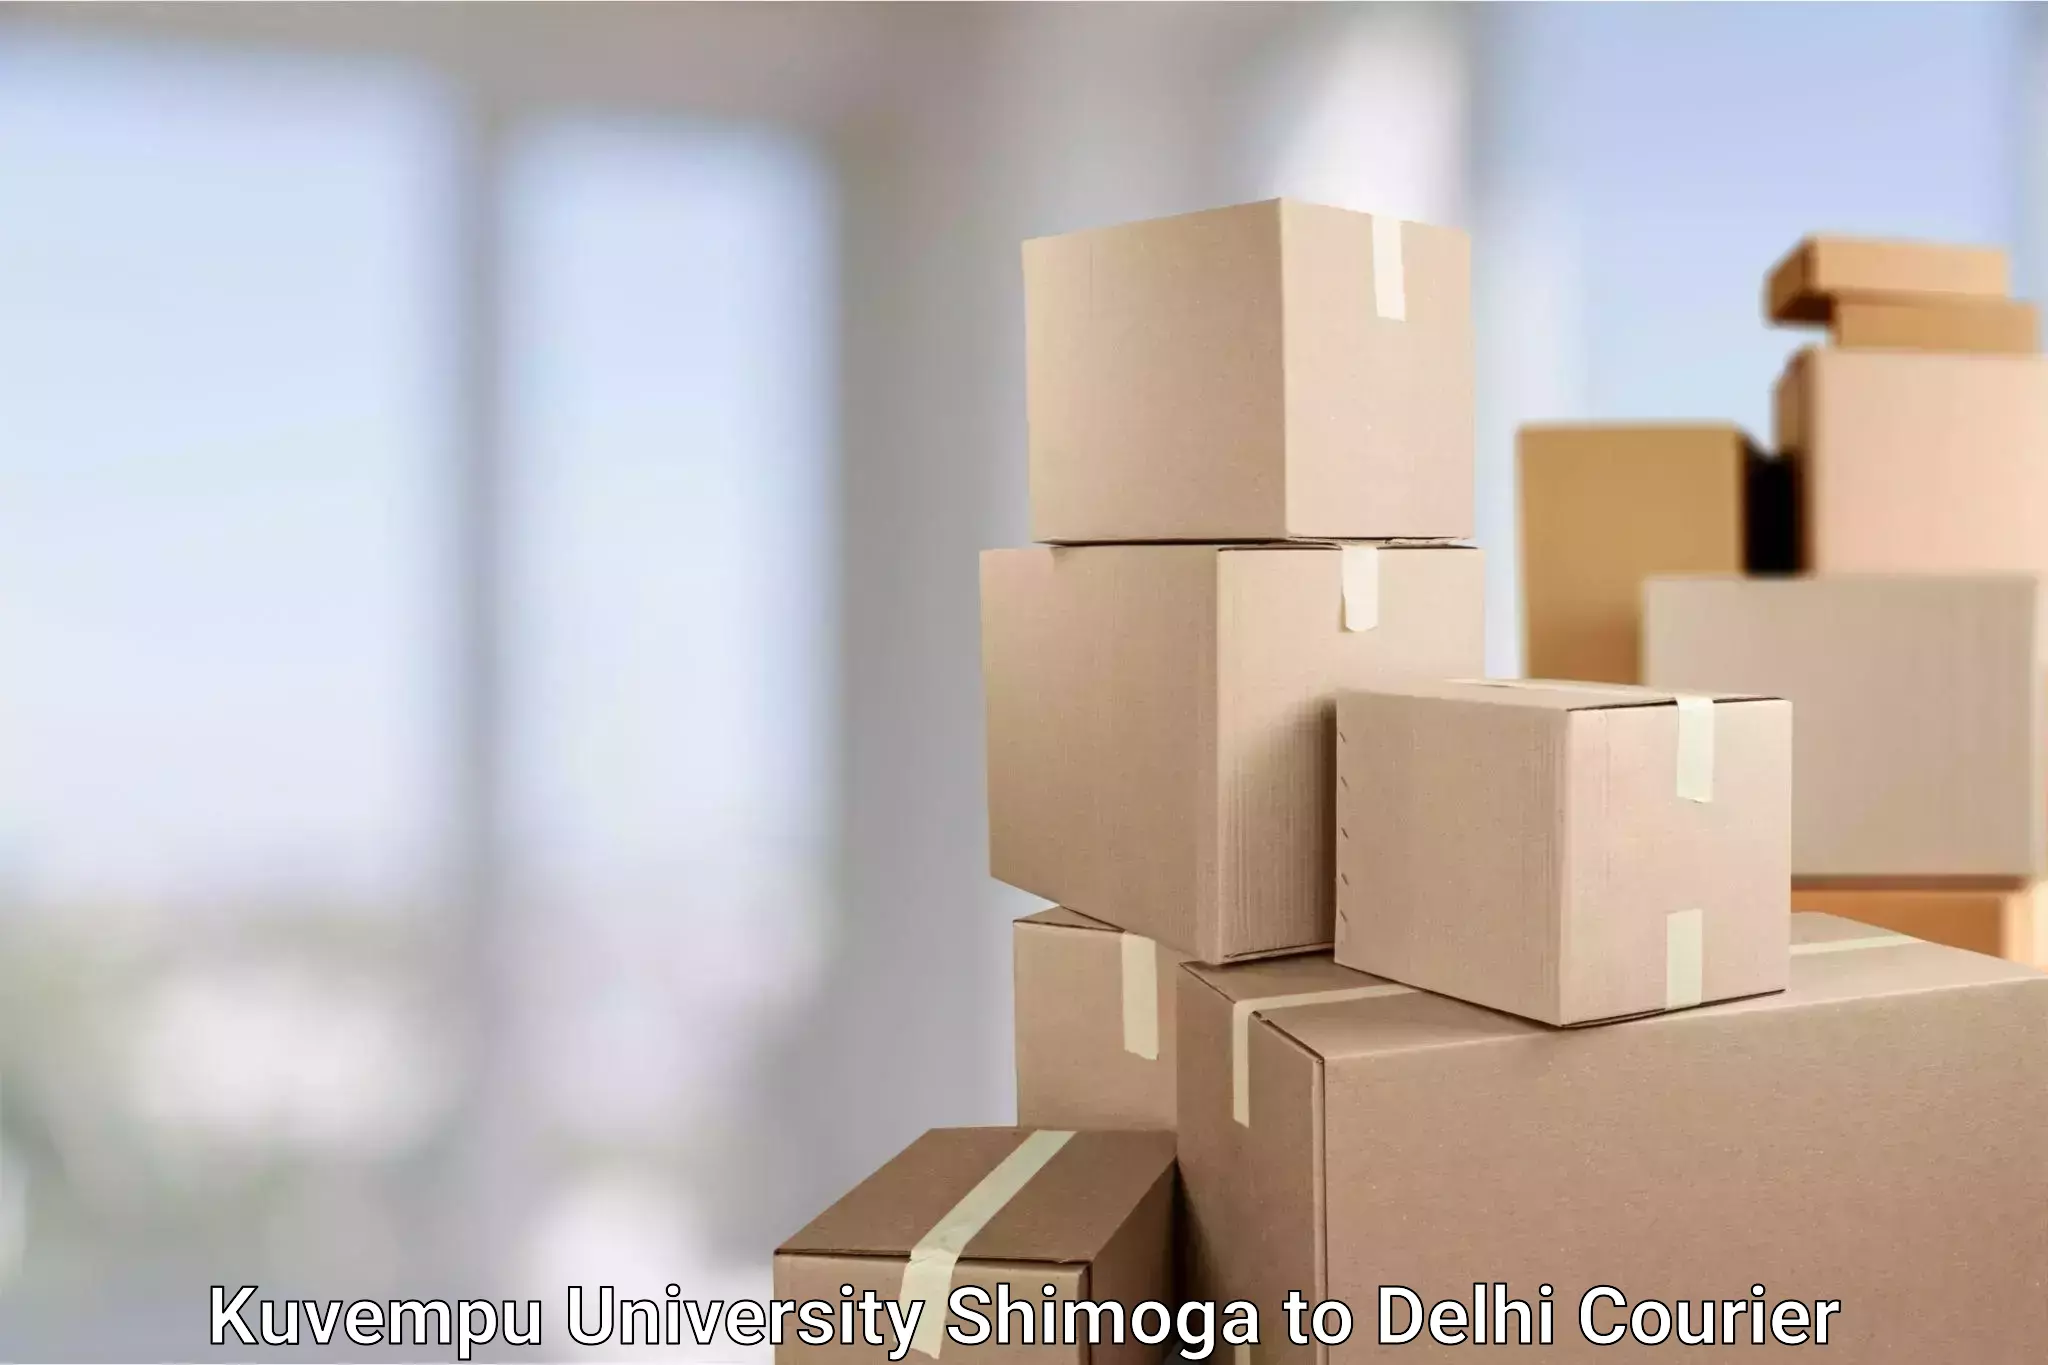 Express delivery network Kuvempu University Shimoga to Guru Gobind Singh Indraprastha University New Delhi